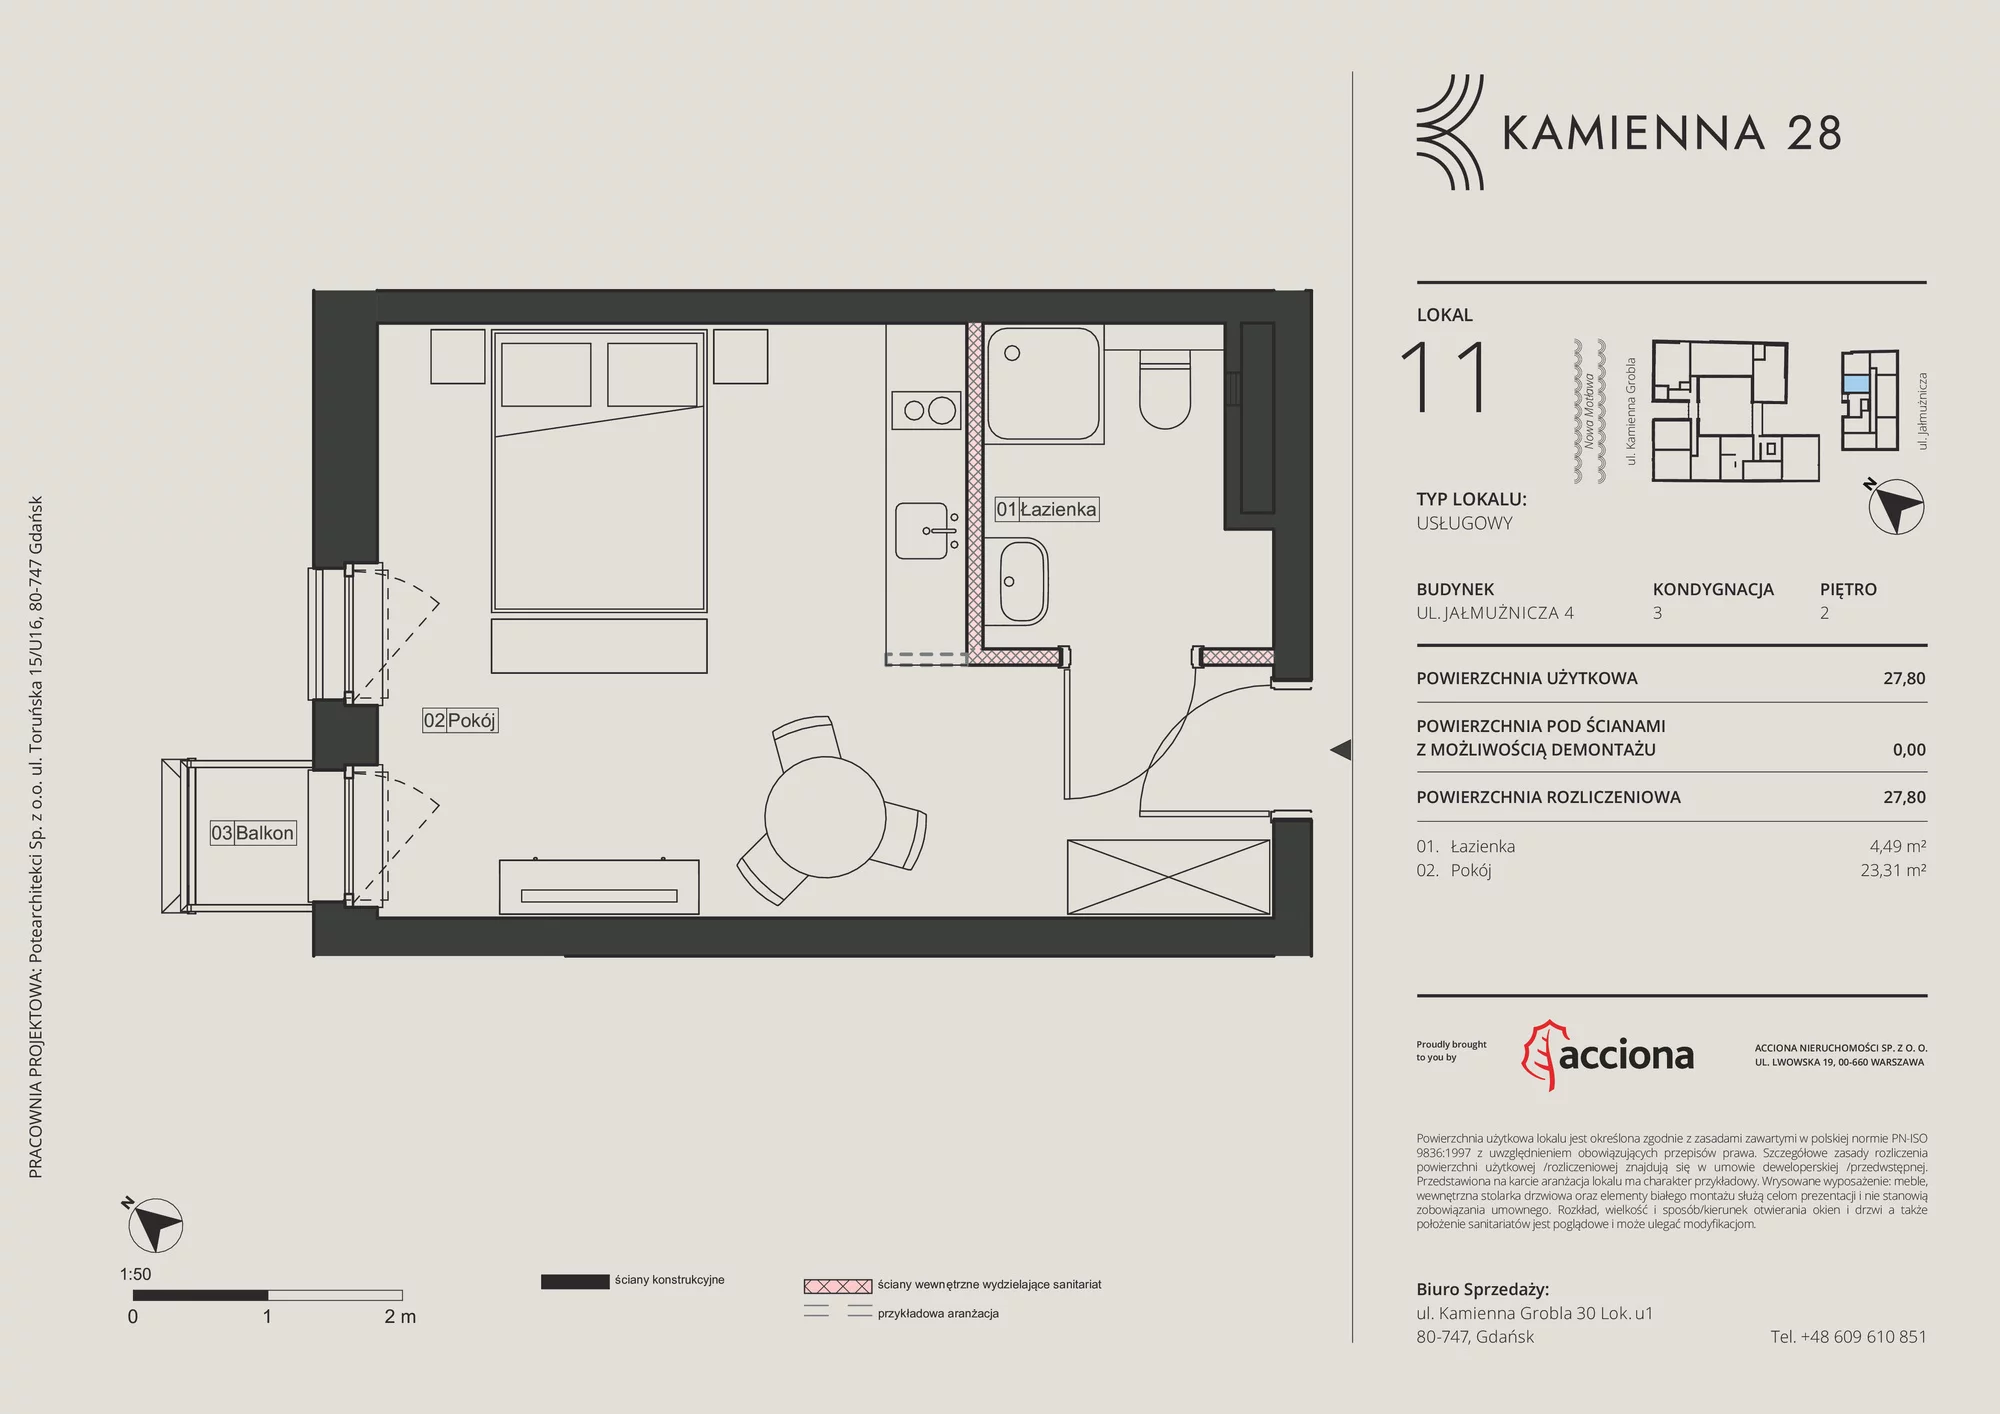 Apartament inwestycyjny 27,80 m², piętro 2, oferta nr 4.11, Kamienna 28 - apartamenty inwestycyjne, Gdańsk, Śródmieście, Dolne Miasto, ul. Jałmużnicza 4